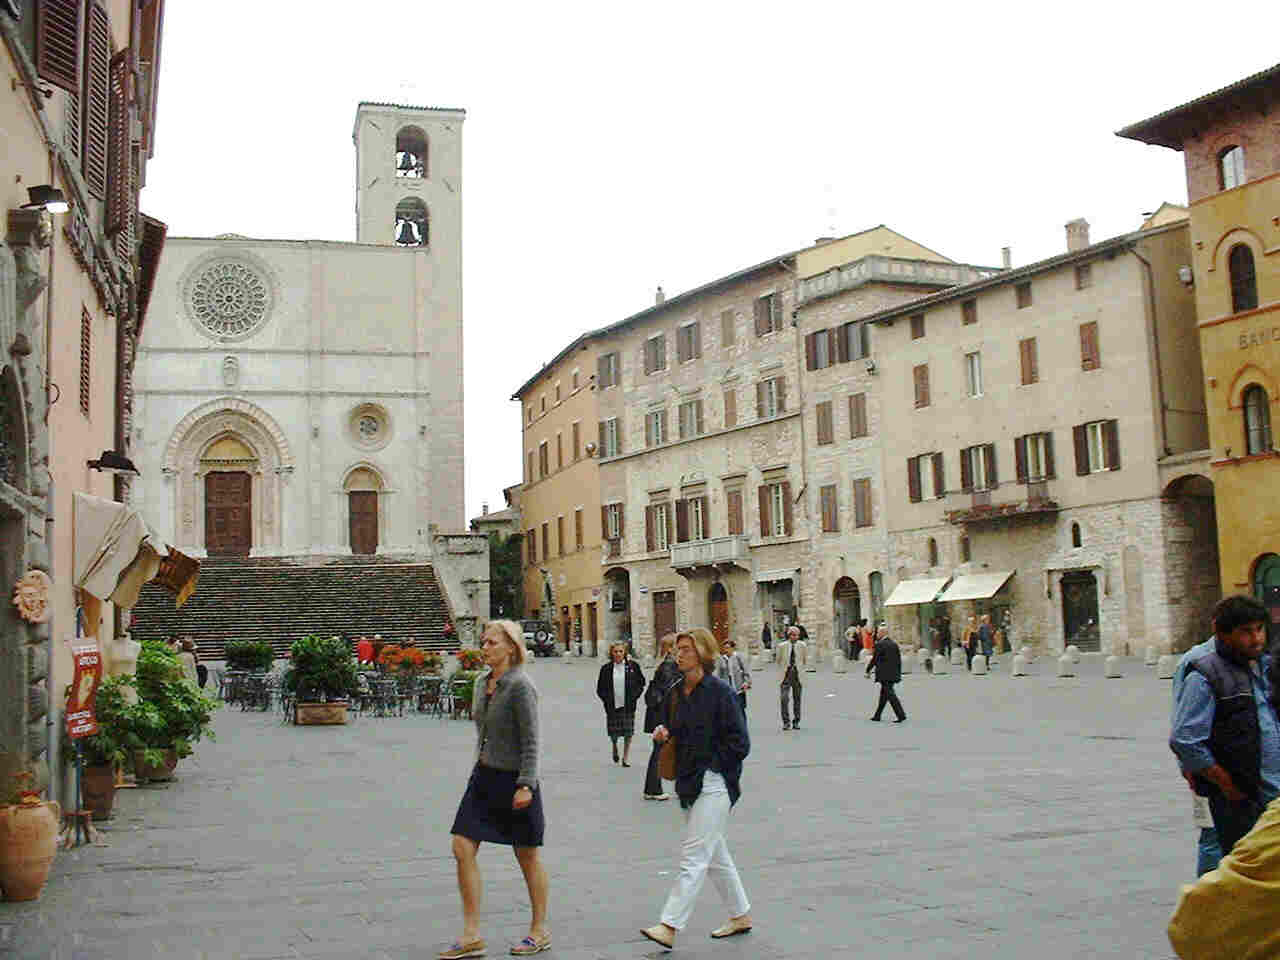 Piazza del Populo, Todi